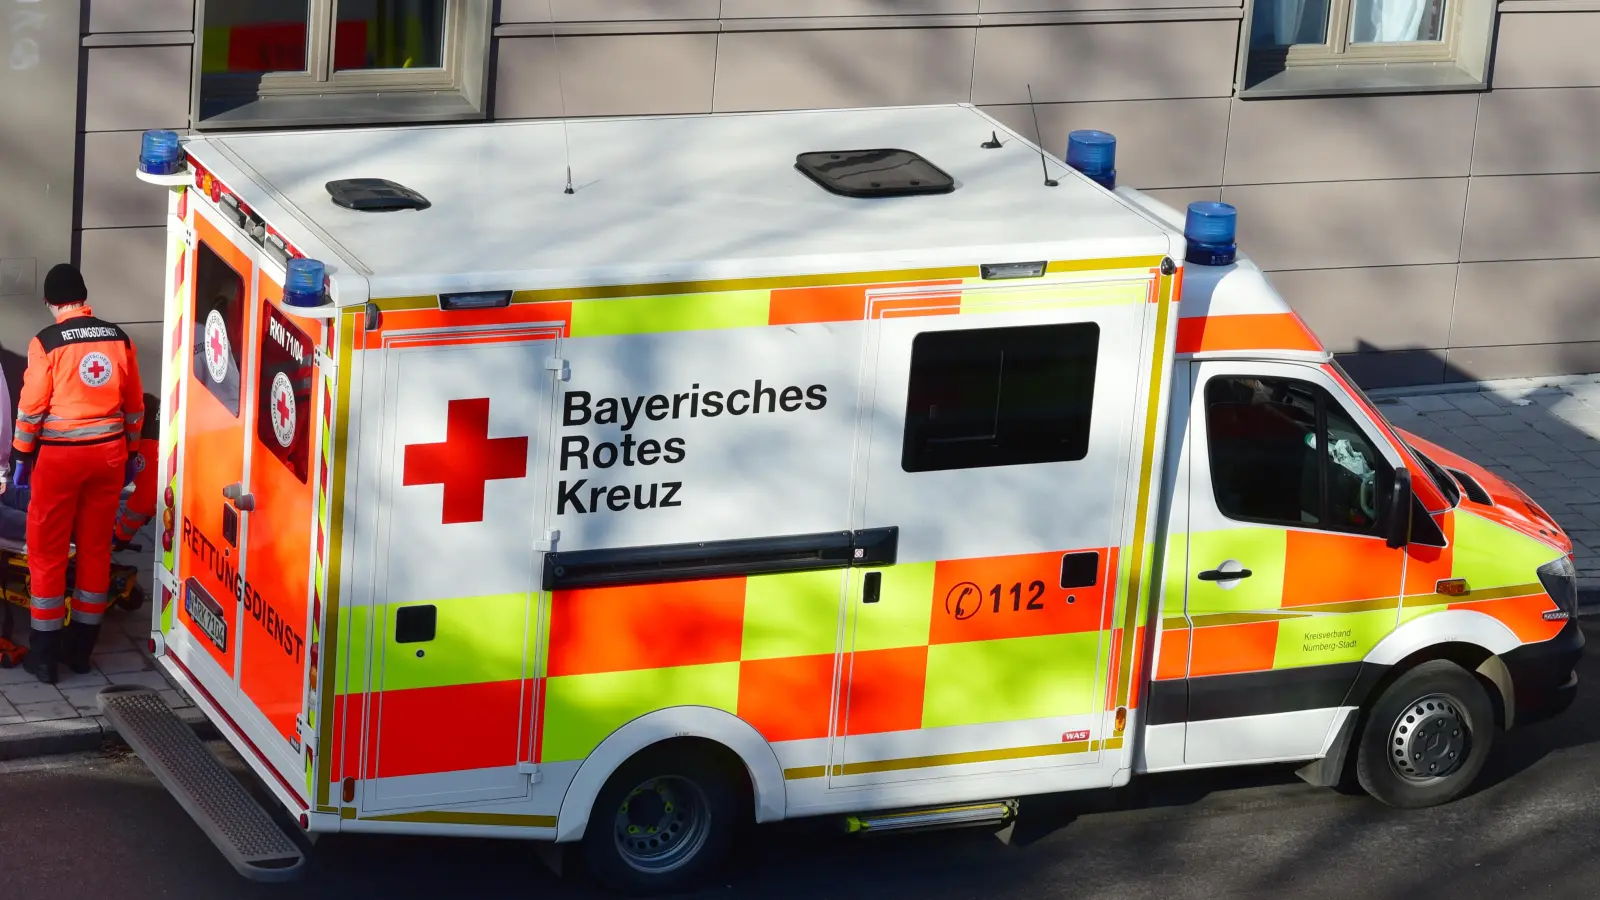 Nach einem Betriebsunfall wurde ein Mitarbeiter einer Zimmerei in Burghaslach ins Krankenhaus gebracht. (Symbolbild: Jim Albright)